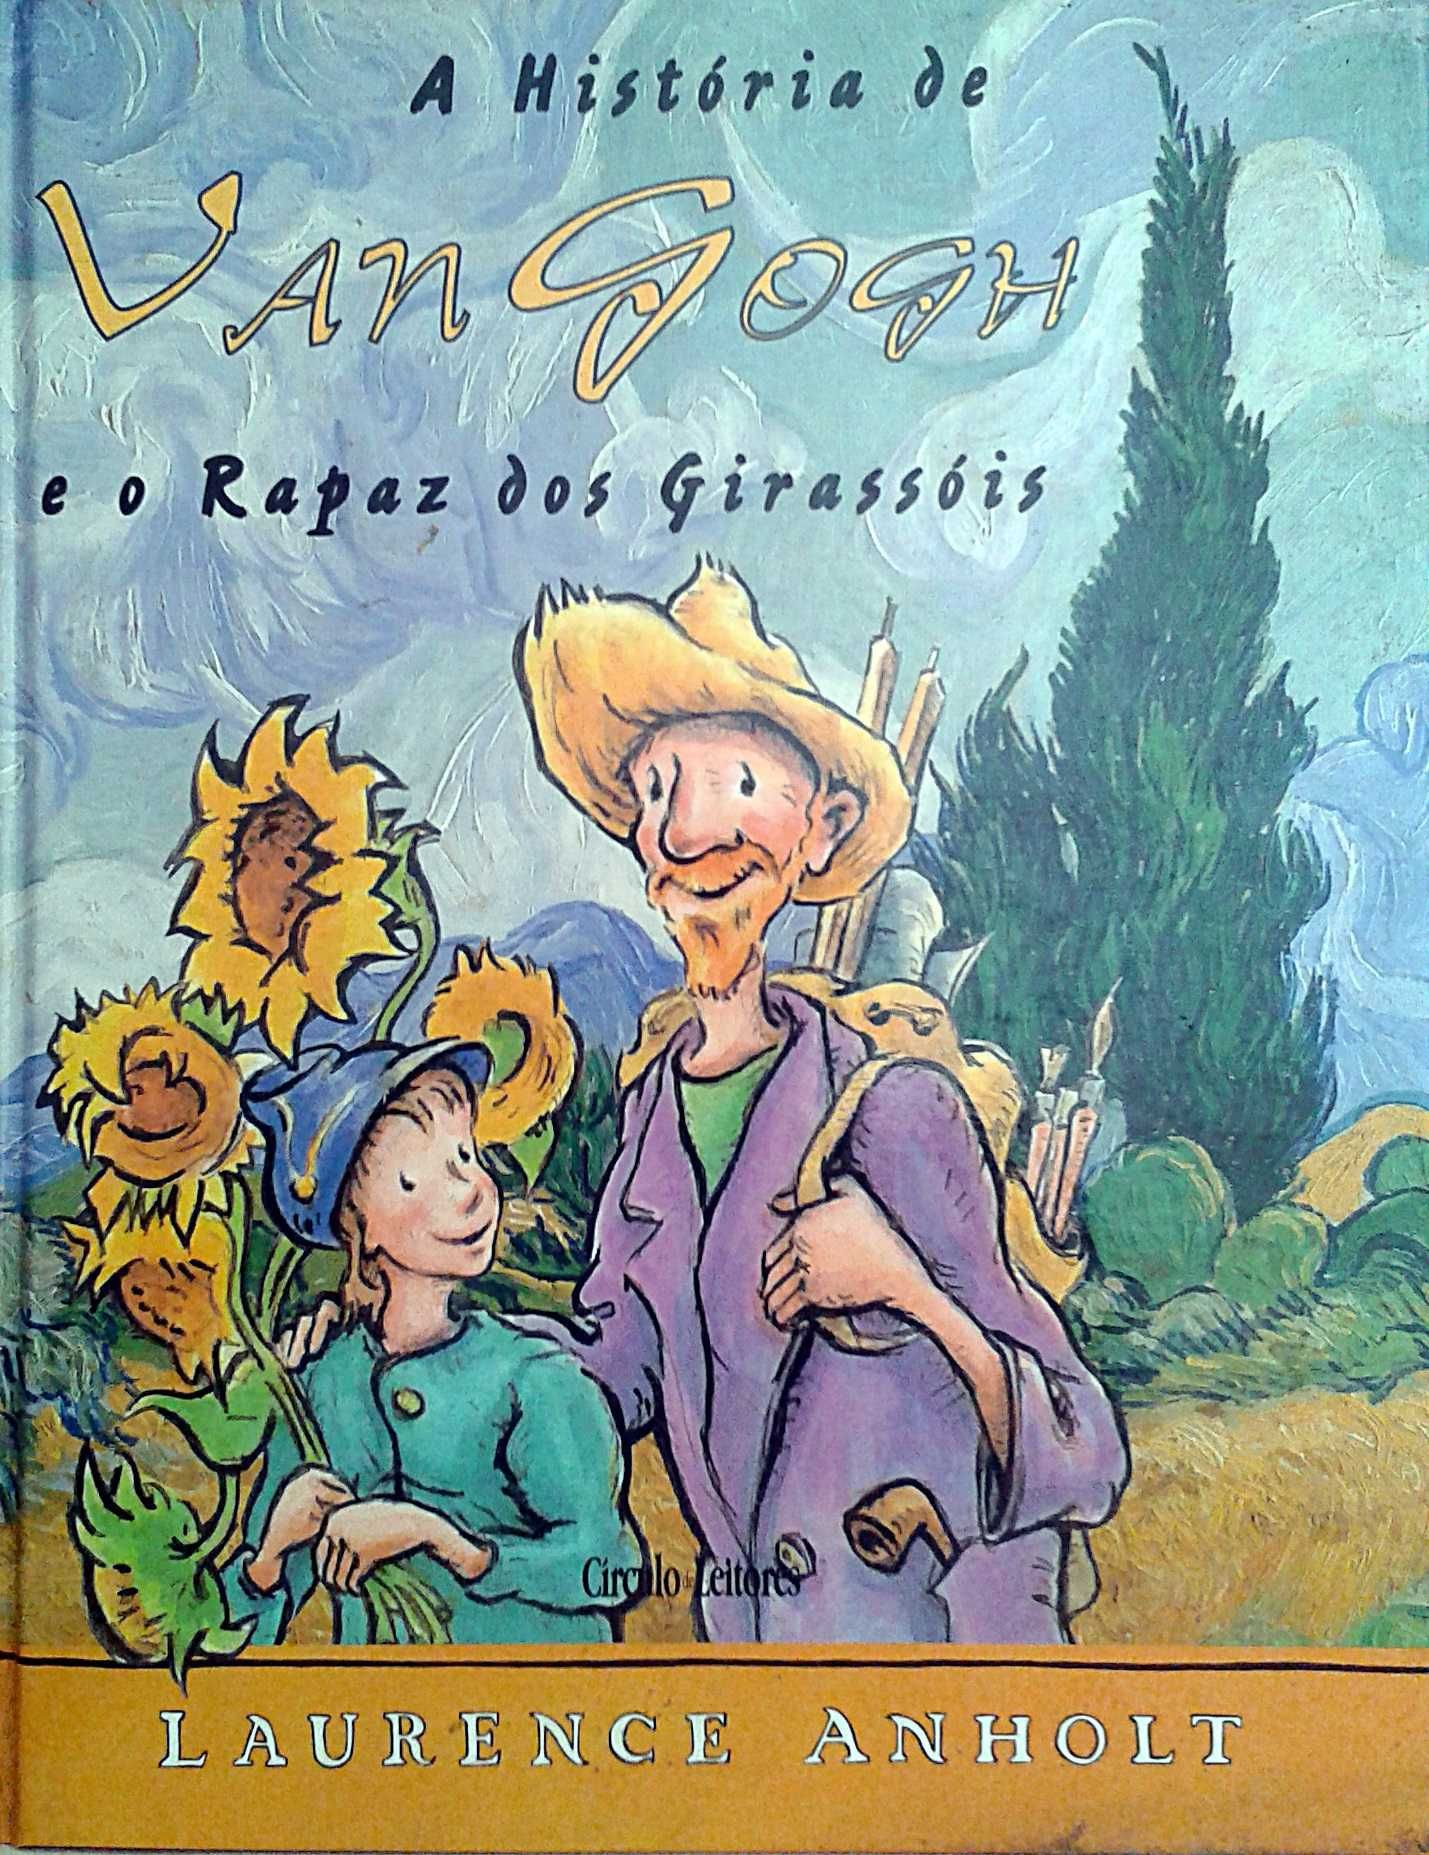 L. Anholt, História de Van Gogh e o Rapaz dos Girassois.  Incl portes